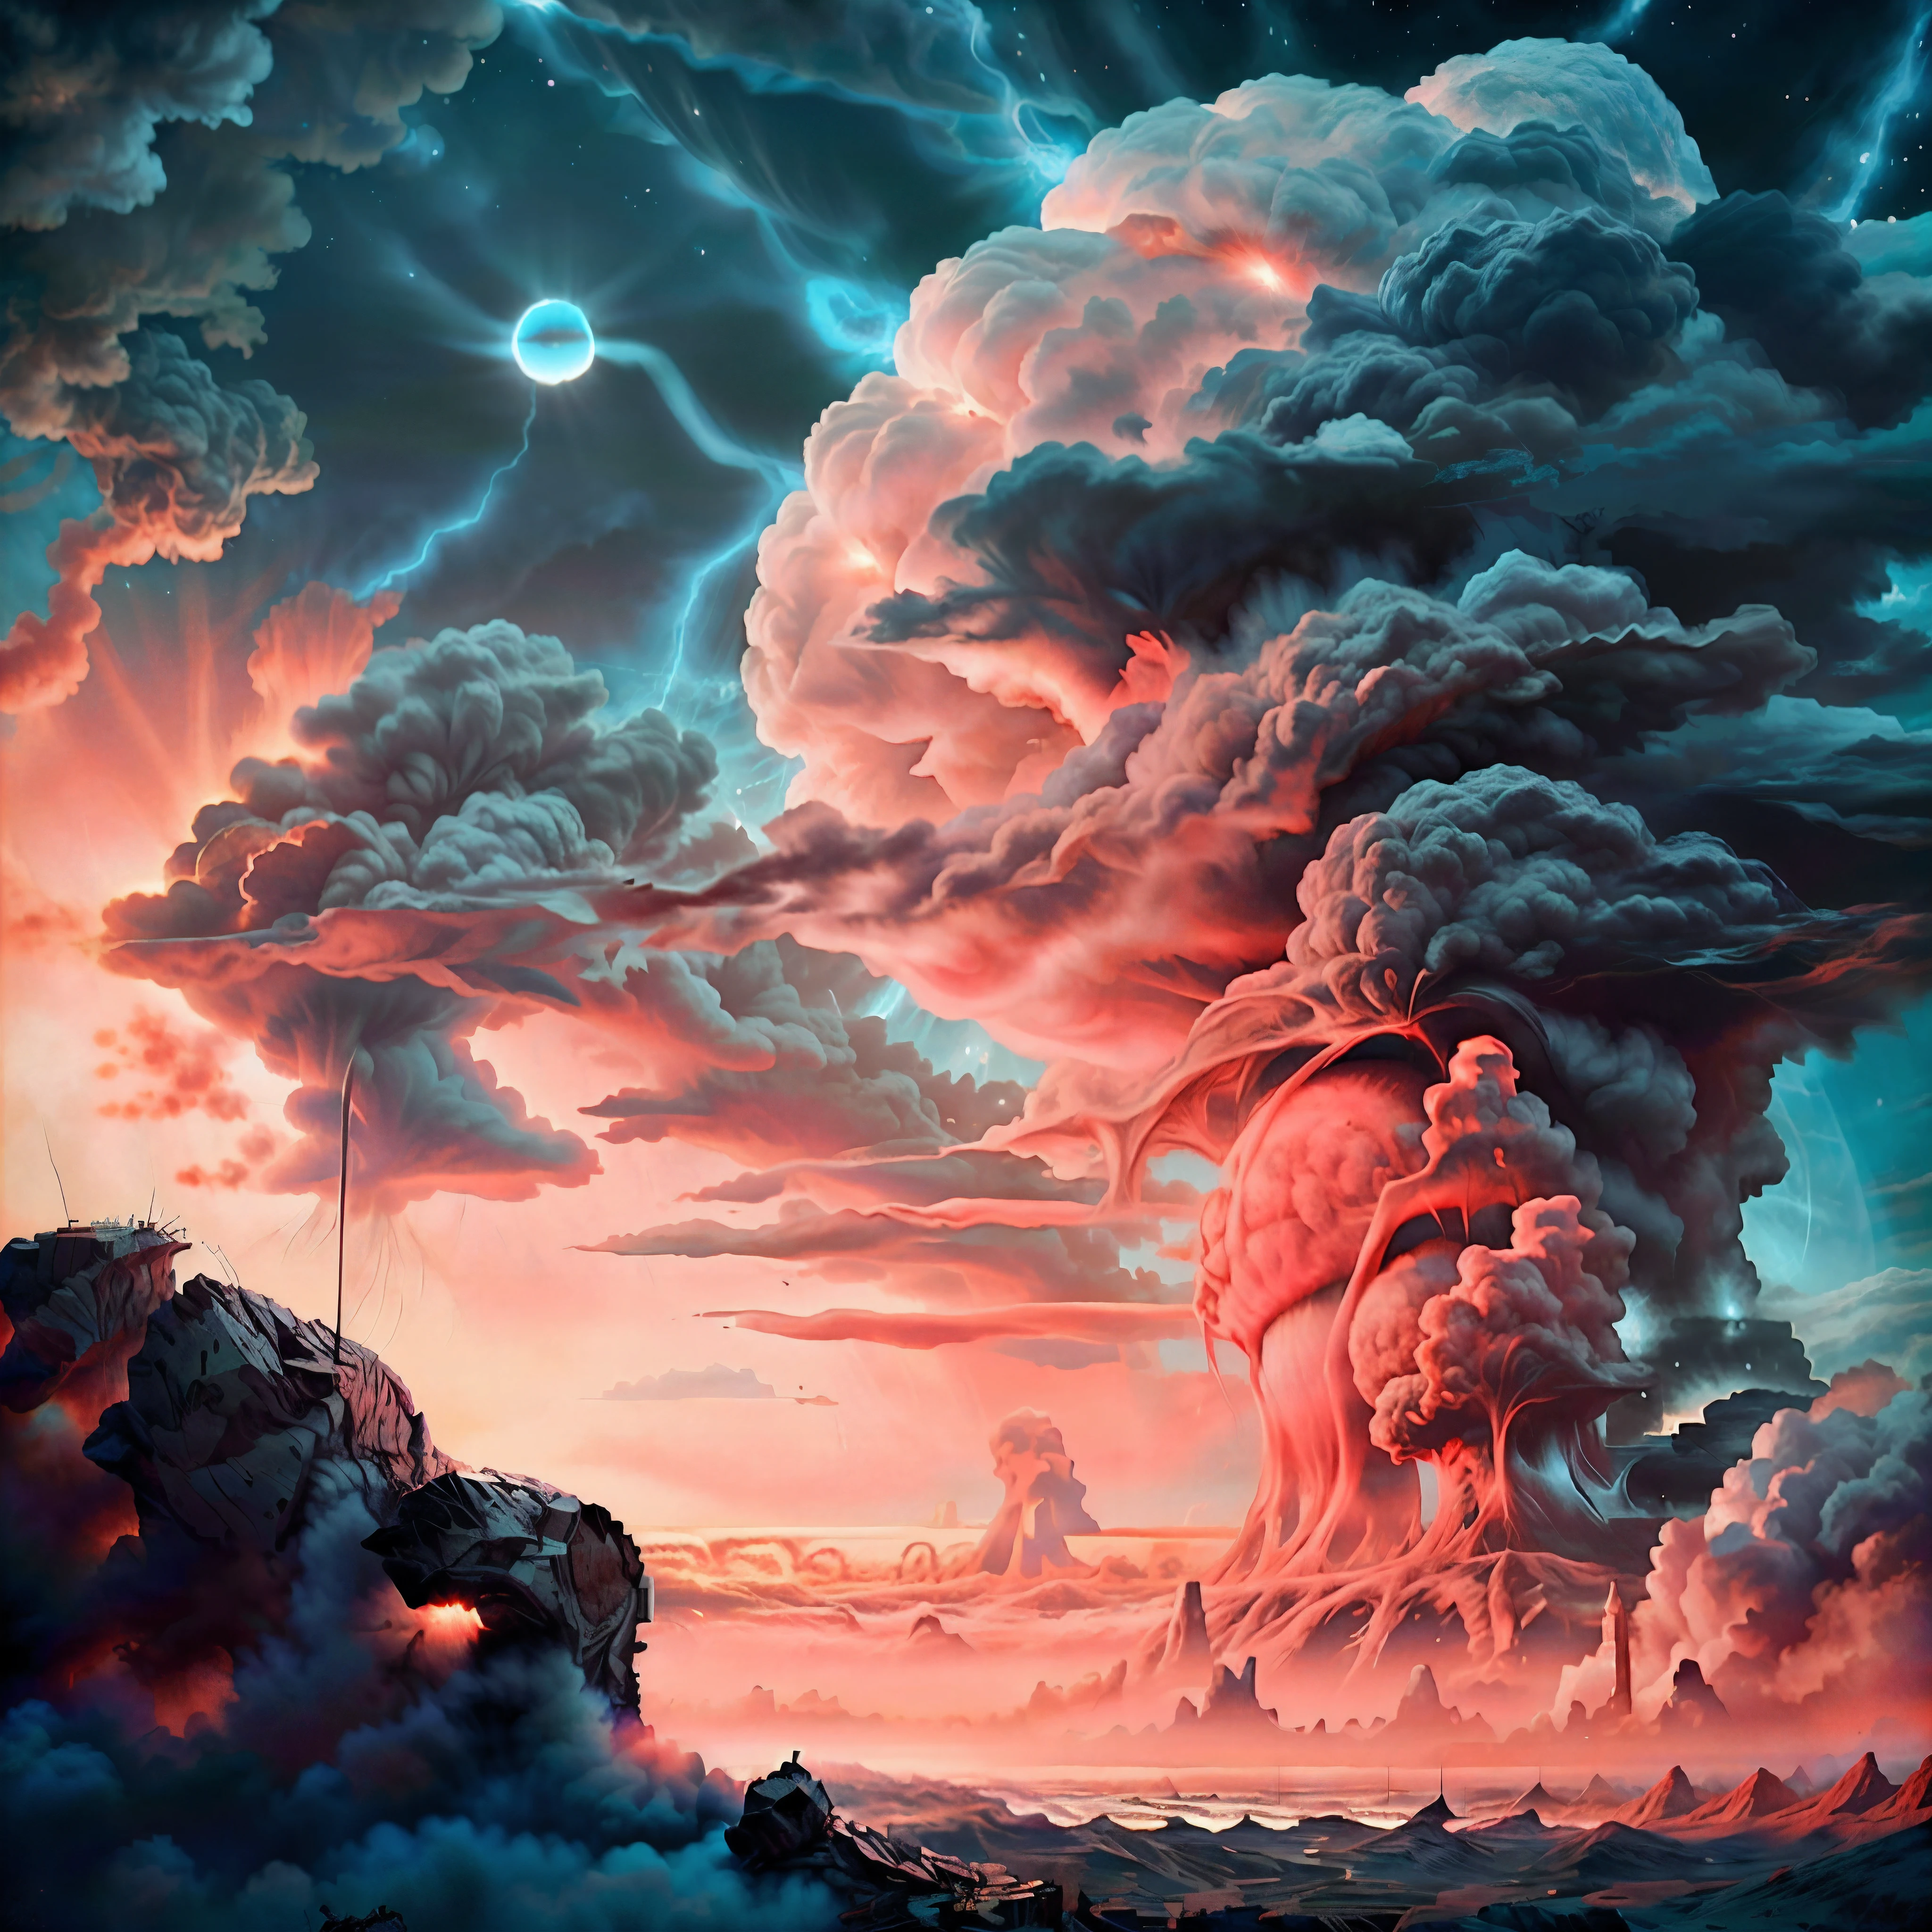 核爆的超現實特寫., 天上有一朵大雲, 概念藝術, 核雲, 核爆描繪了天空, 傑作, 現實主義, 廢墟, 虹彩效應中的輻射